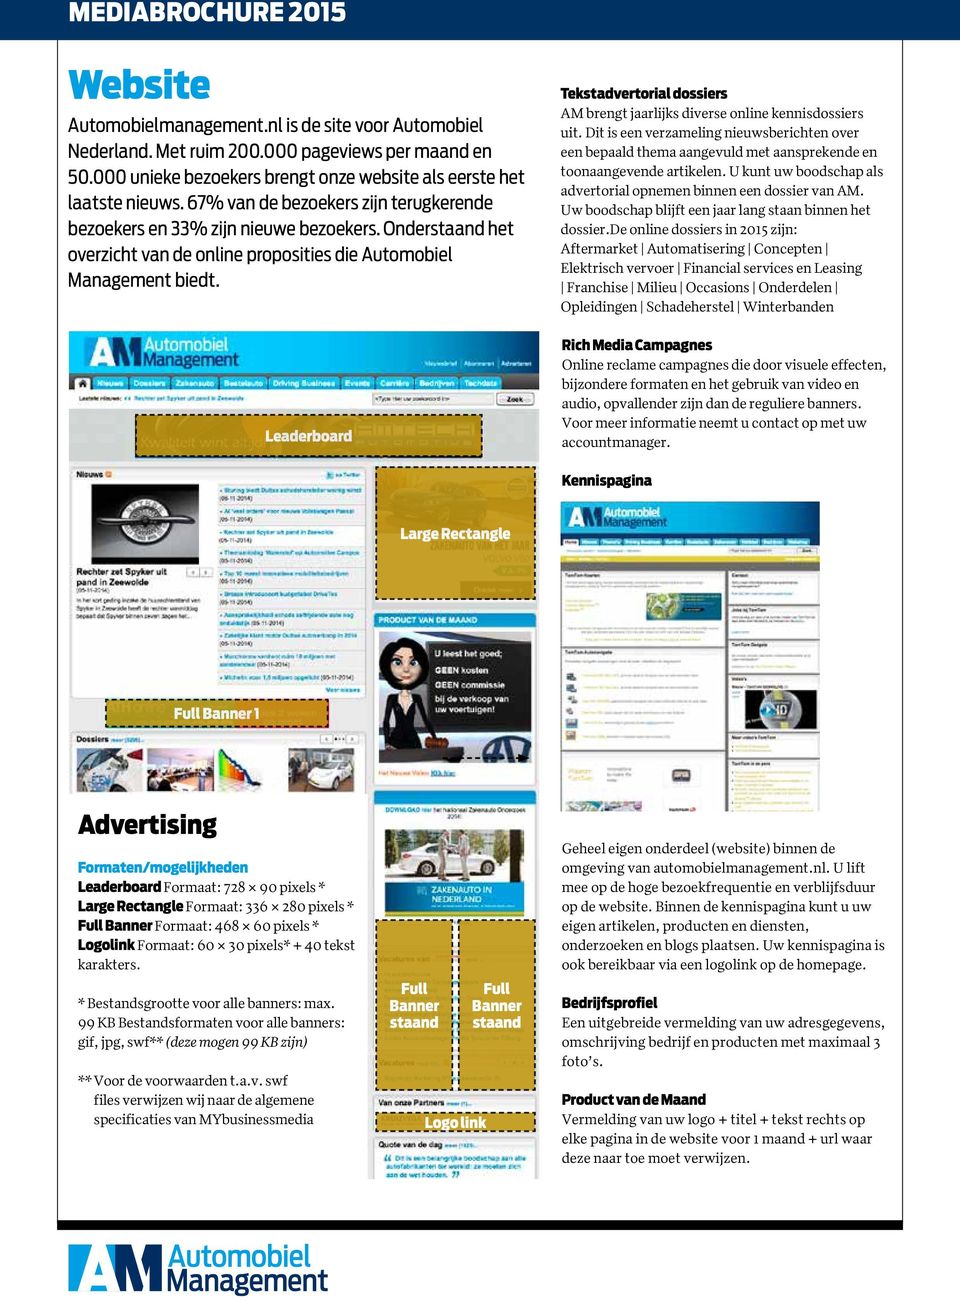 Leaderboard Tekstadvertorial dossiers AM brengt jaarlijks diverse online kennisdossiers uit.